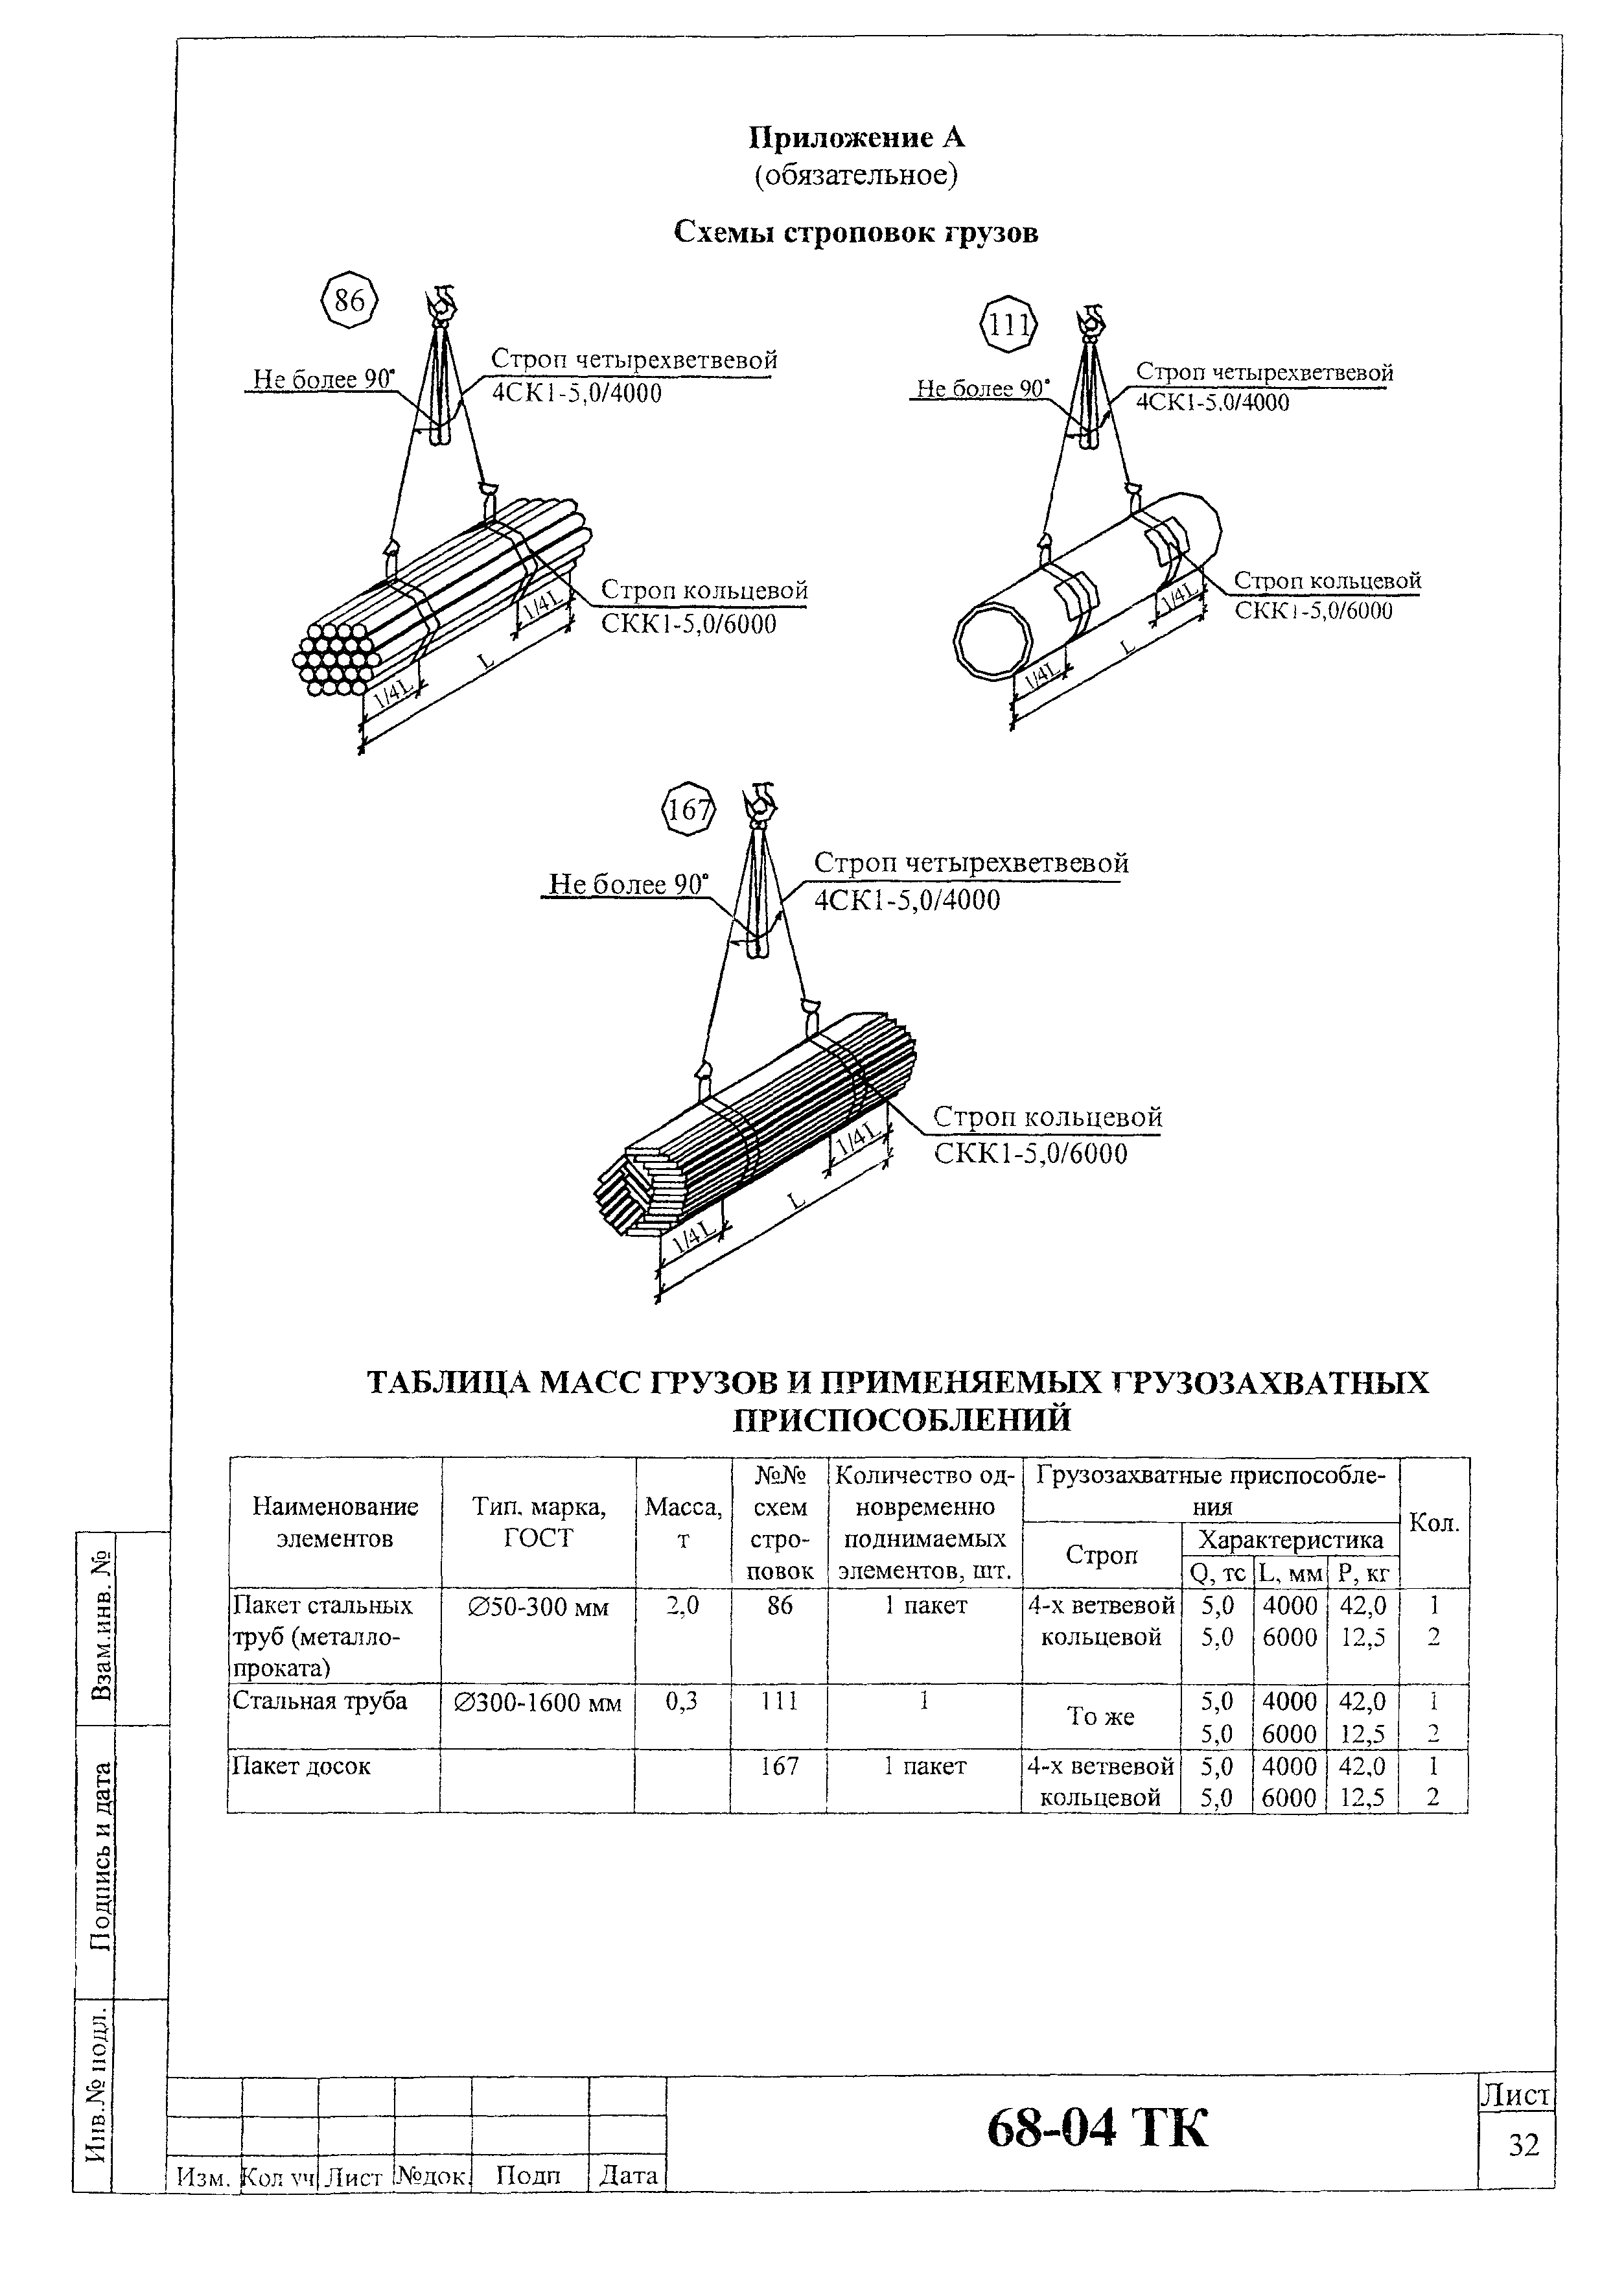 Технологическая карта 68-04 ТК